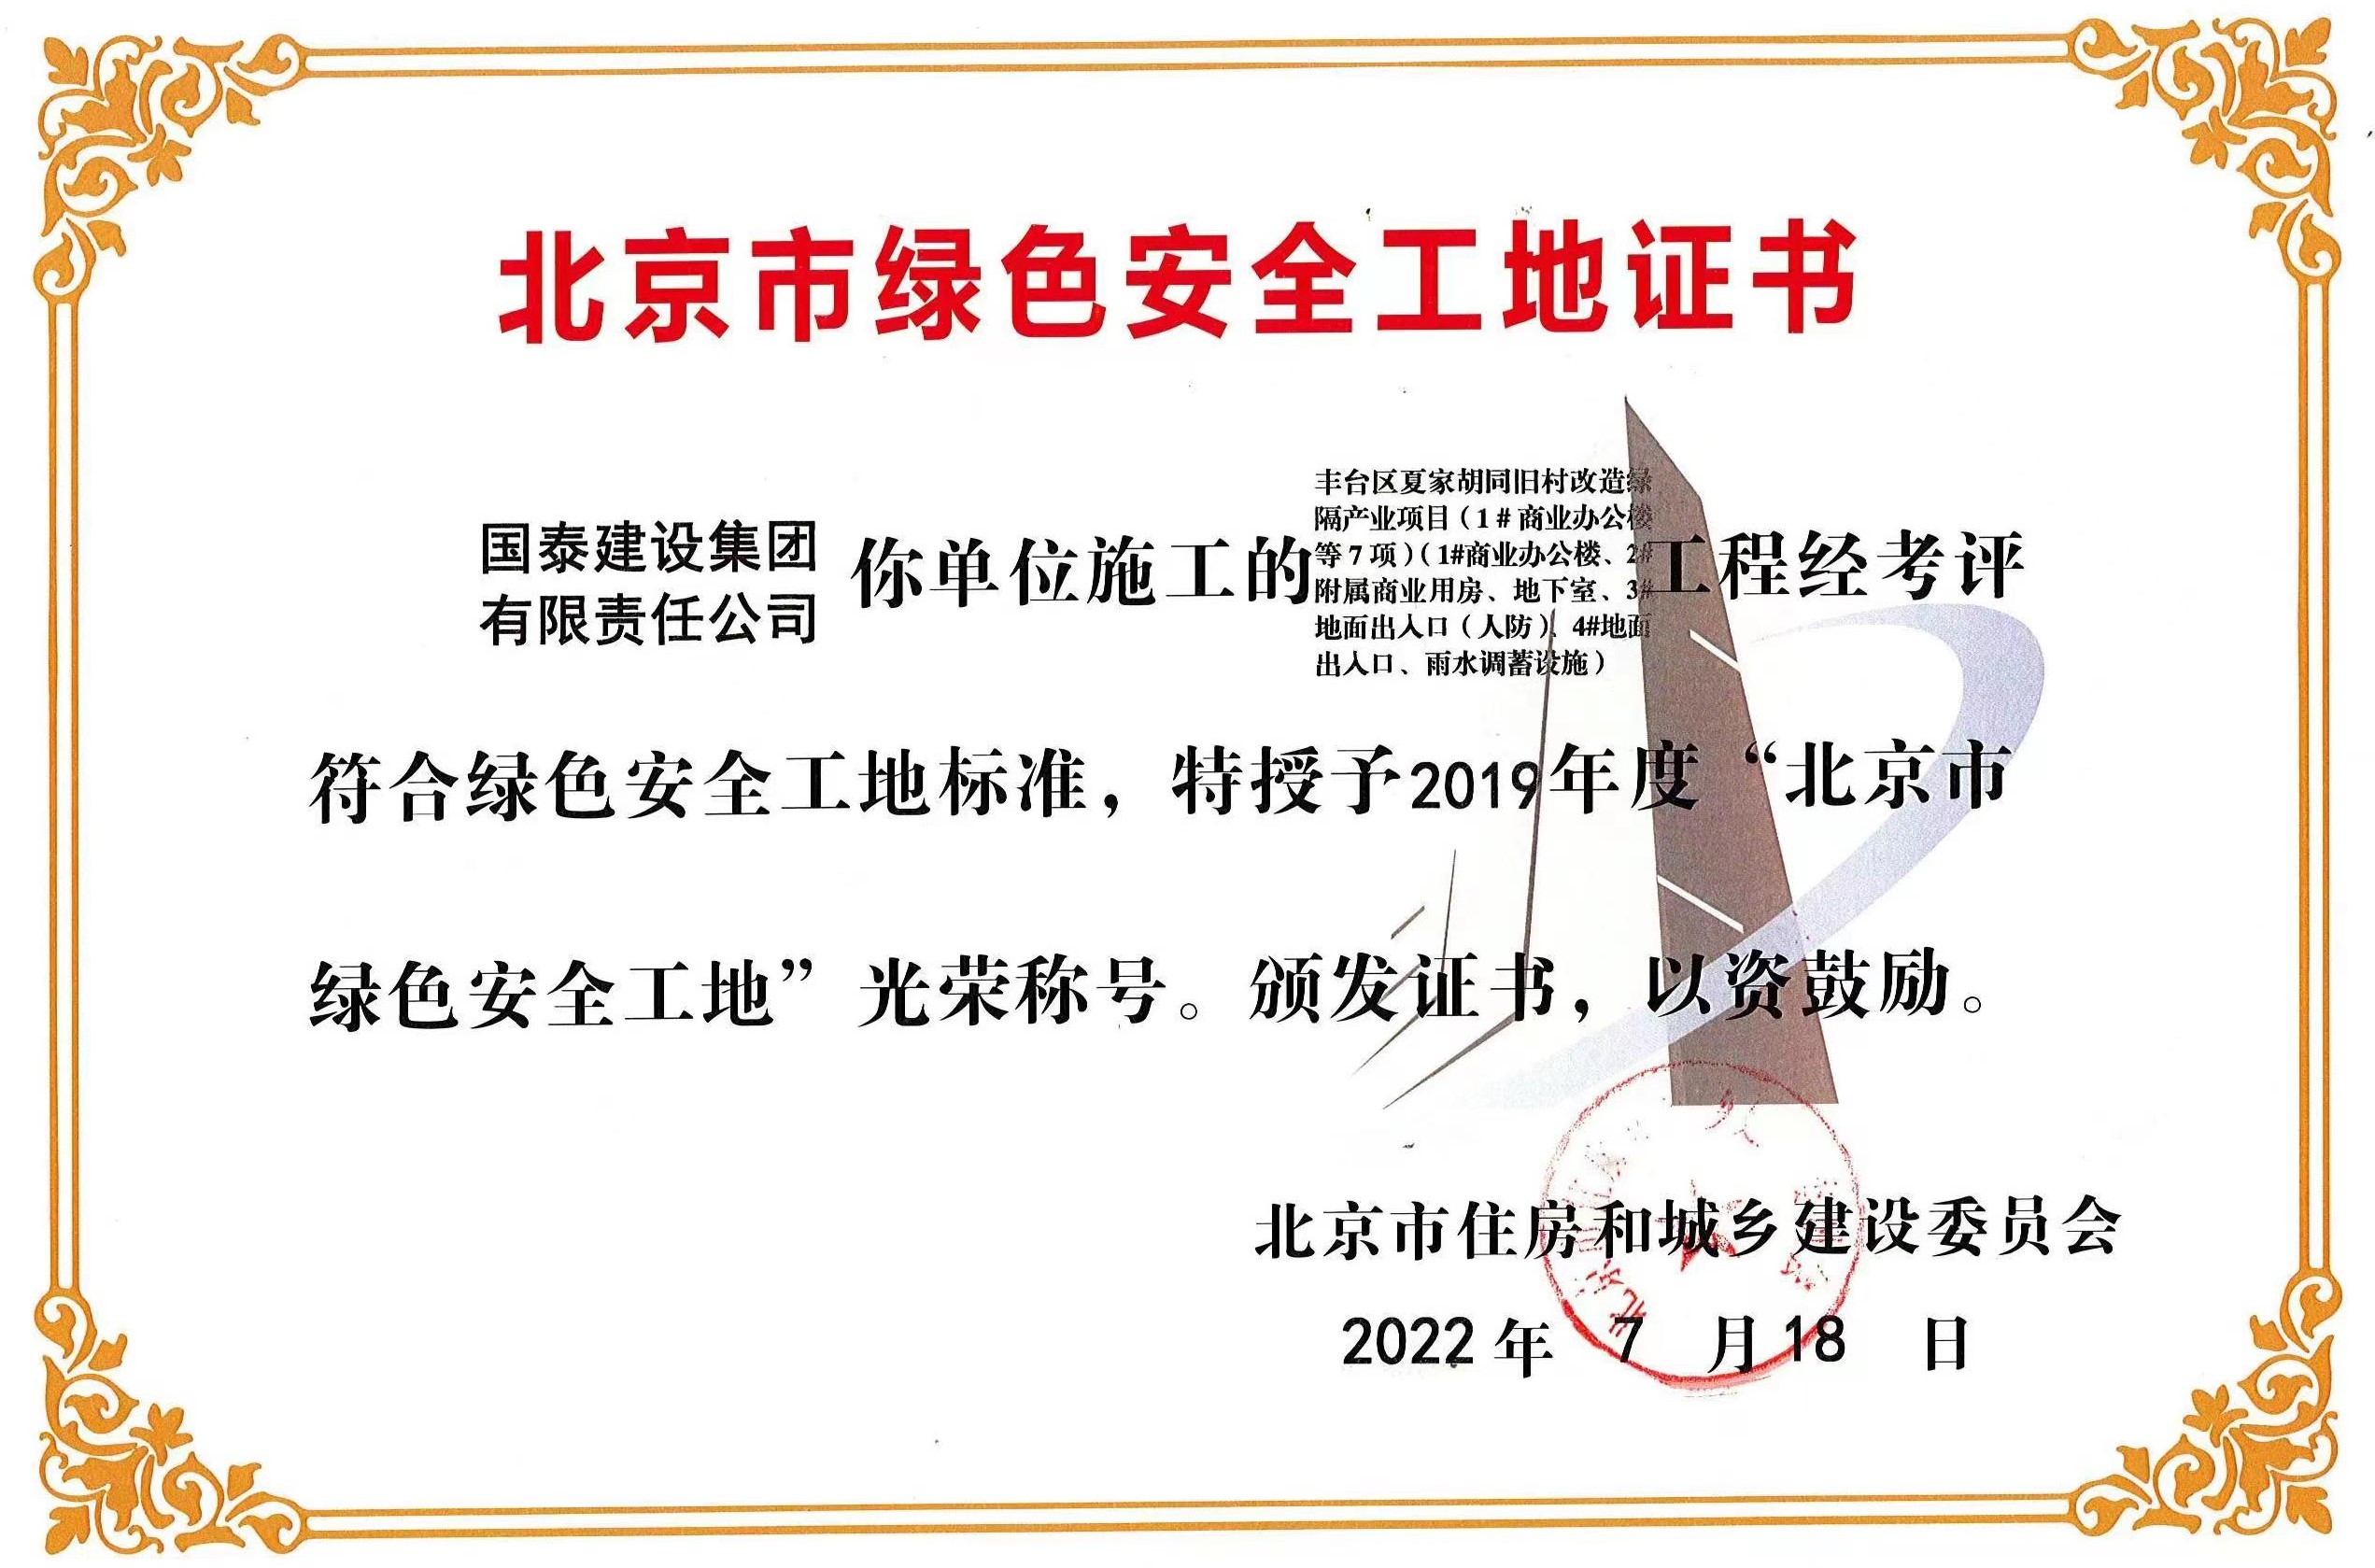 集团夏家胡同项目 荣获2019年度“北京市绿色安全工地“光荣称号